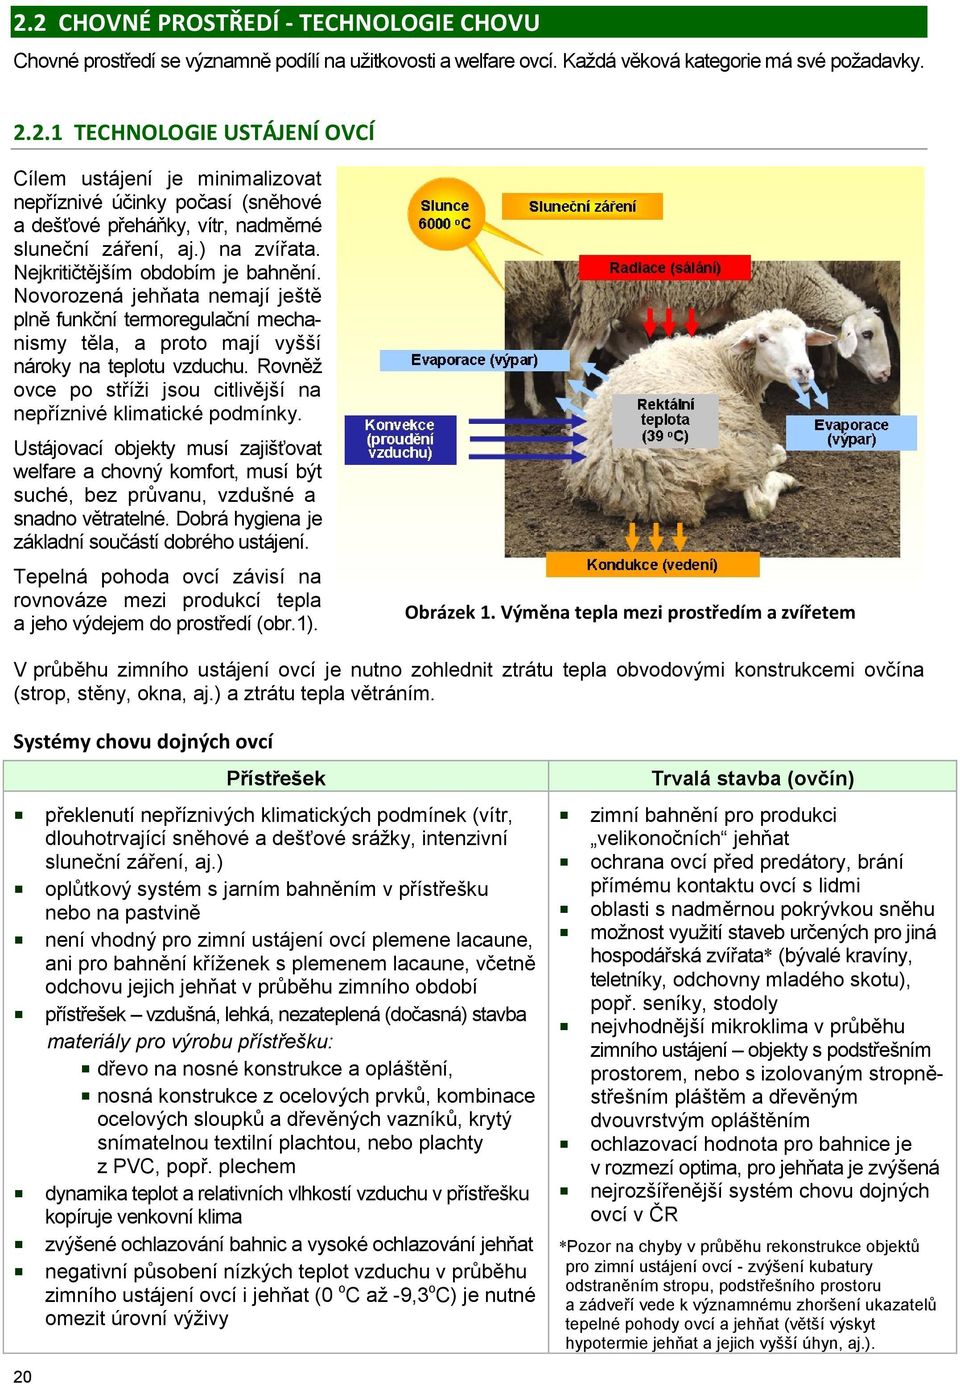 Rovněž ovce po stříži jsou citlivější na nepříznivé klimatické podmínky. Ustájovací objekty musí zajišťovat welfare a chovný komfort, musí být suché, bez průvanu, vzdušné a snadno větratelné.